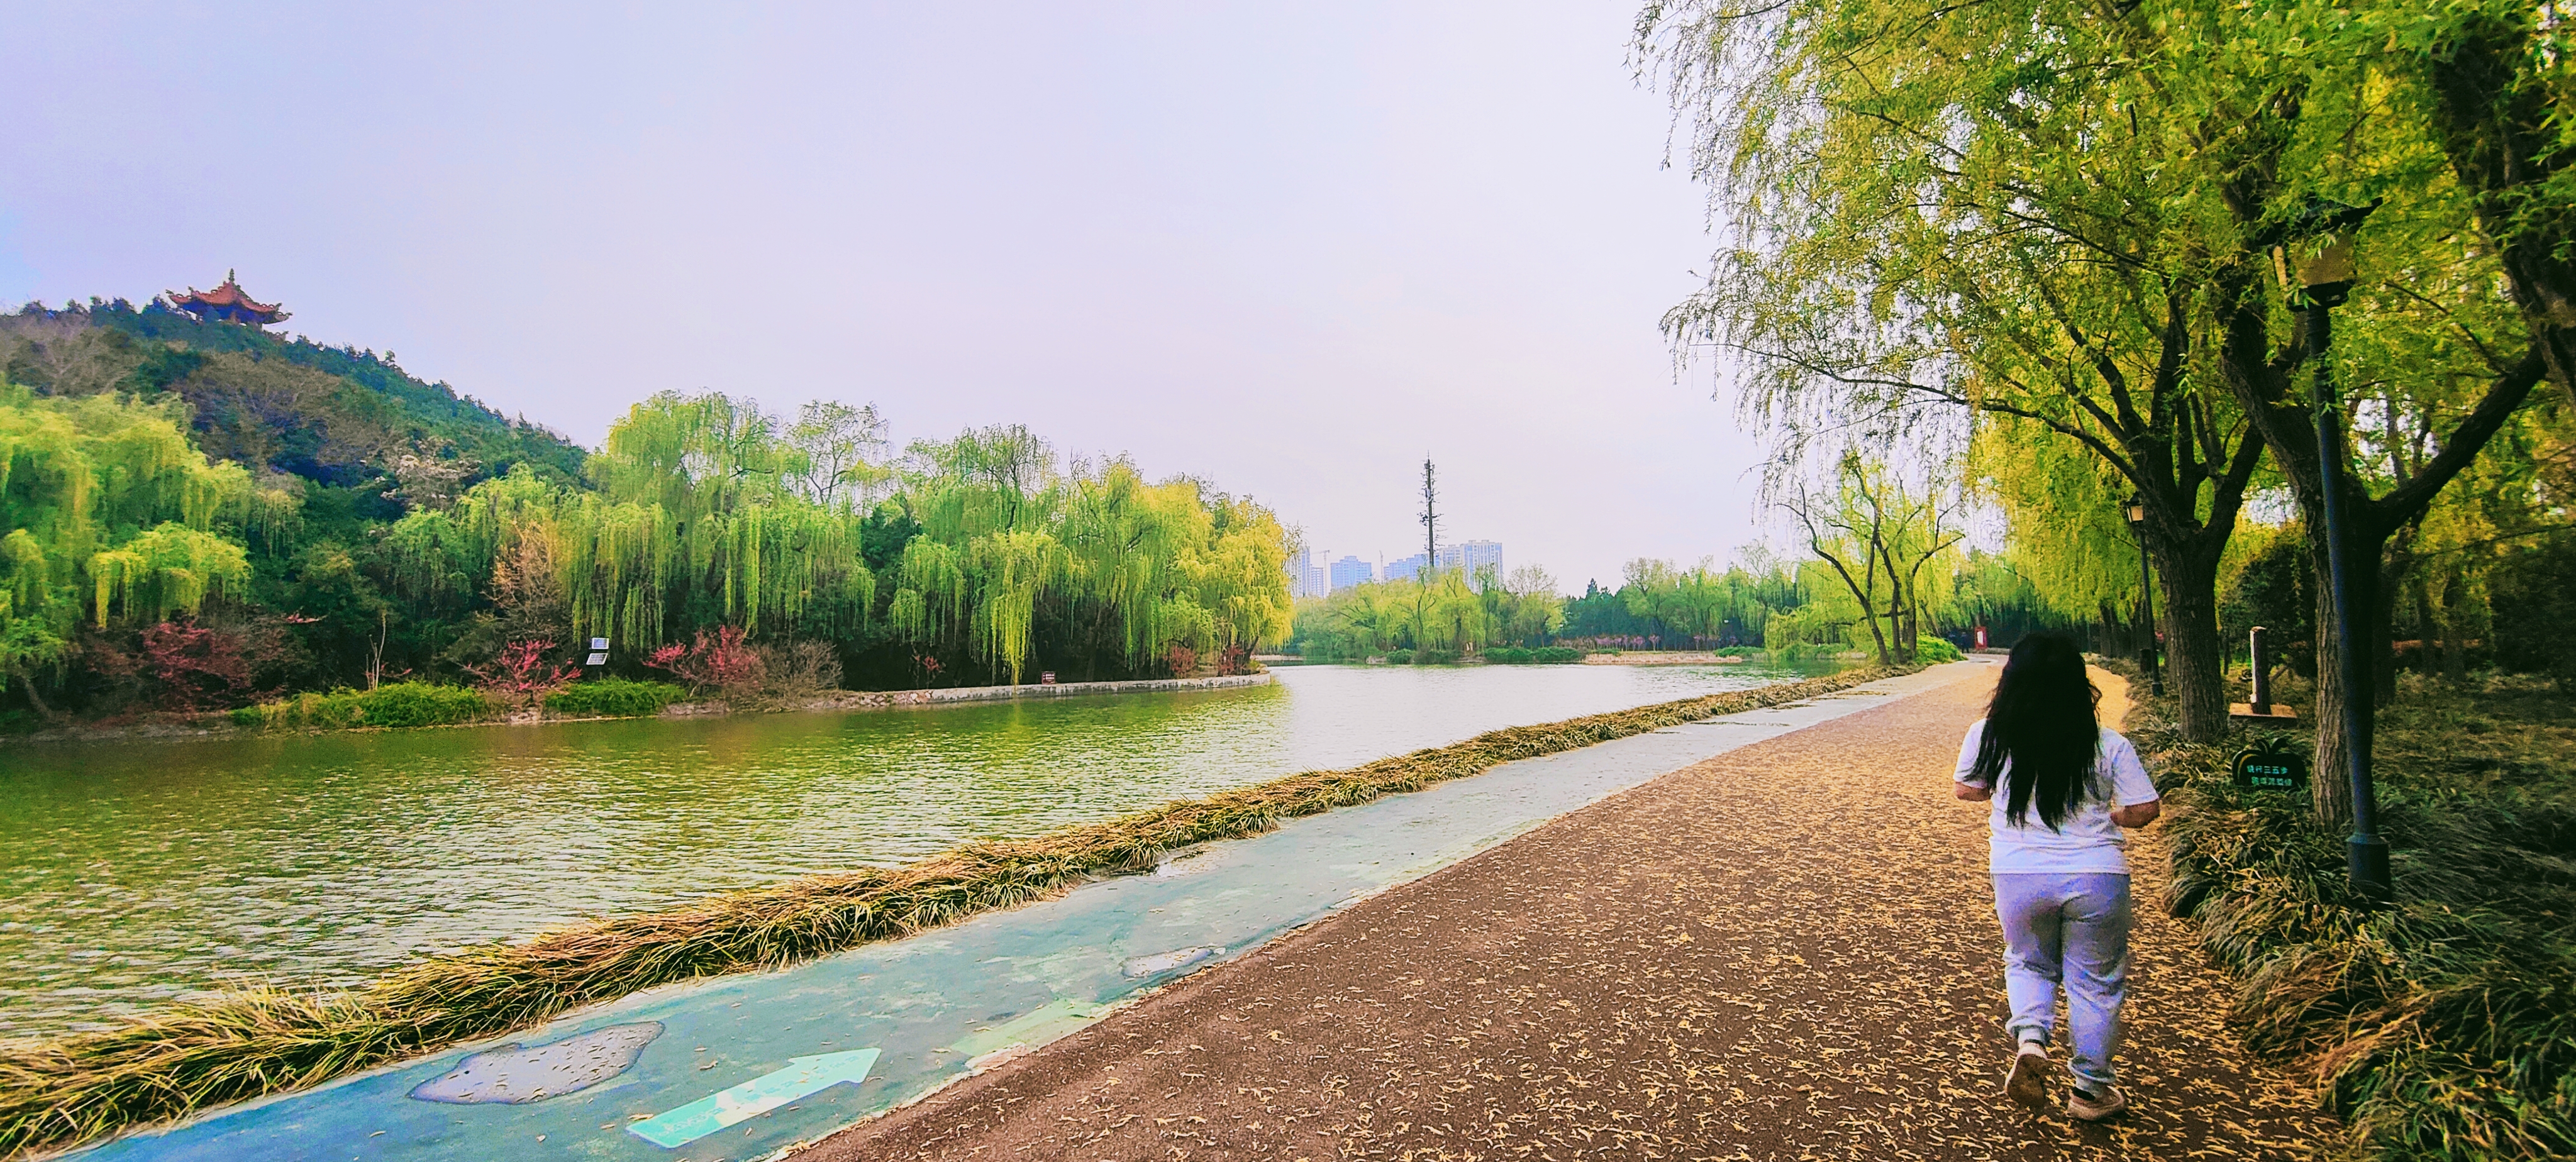 拍摄时间:2024年4月2日拍摄地点:禹州市森林植物园手机随拍:贺景昌